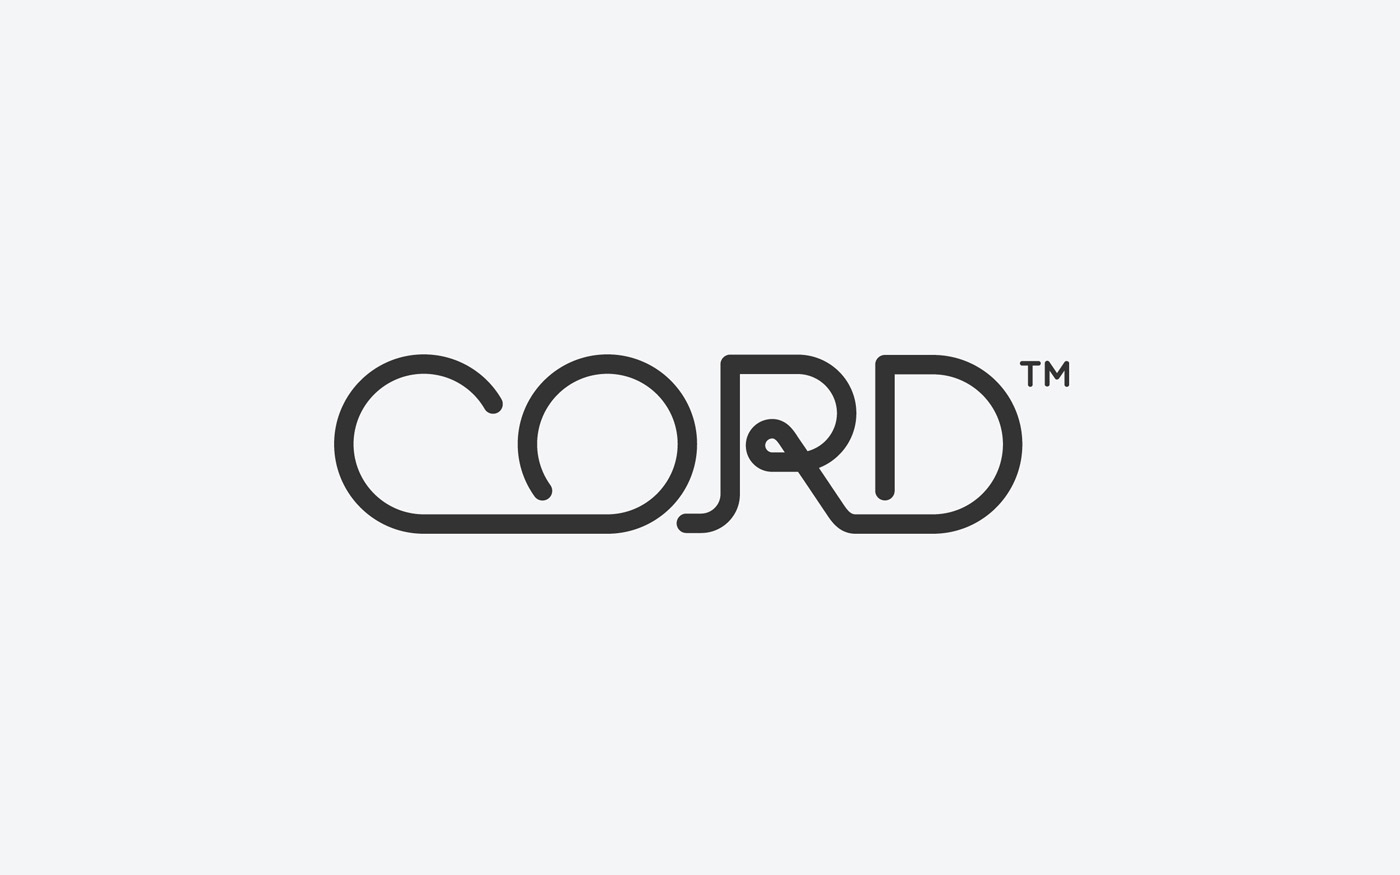 Cord Worldwide / Two Times Elliott